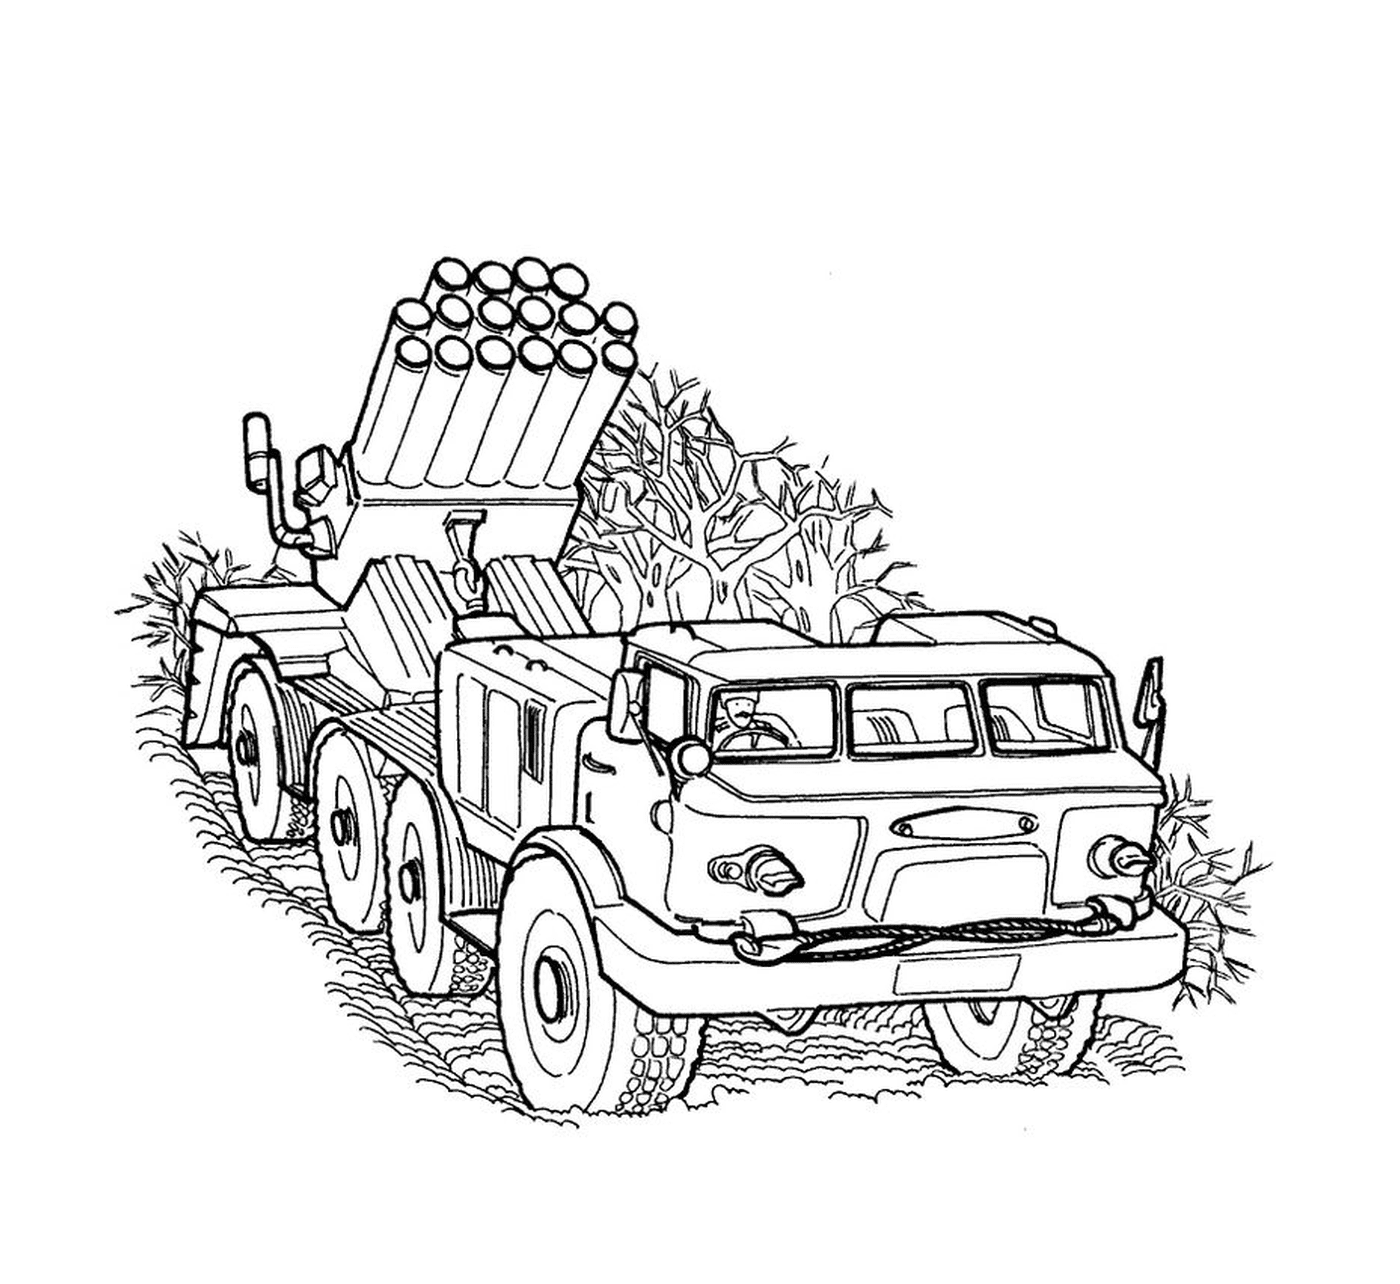  Военная машина: старый грузовик с ракетной пусковой установкой 